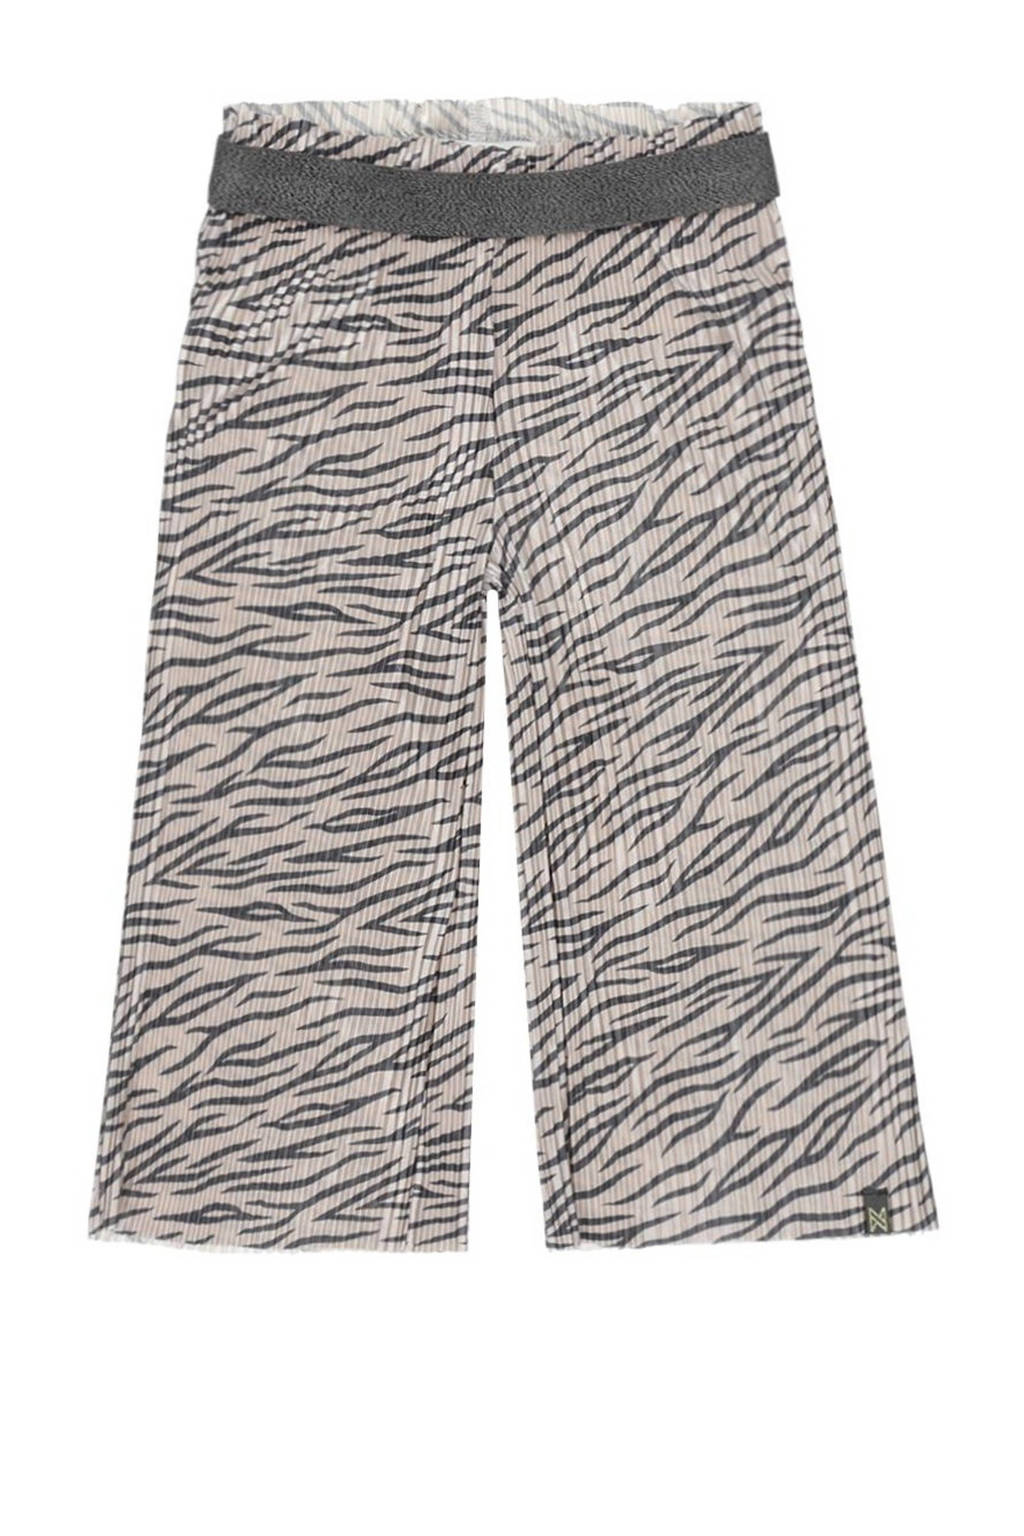 Beige en zwarte meisjes Koko Noko wide leg broek van polyester met regular waist, elastische inzet en zebraprint